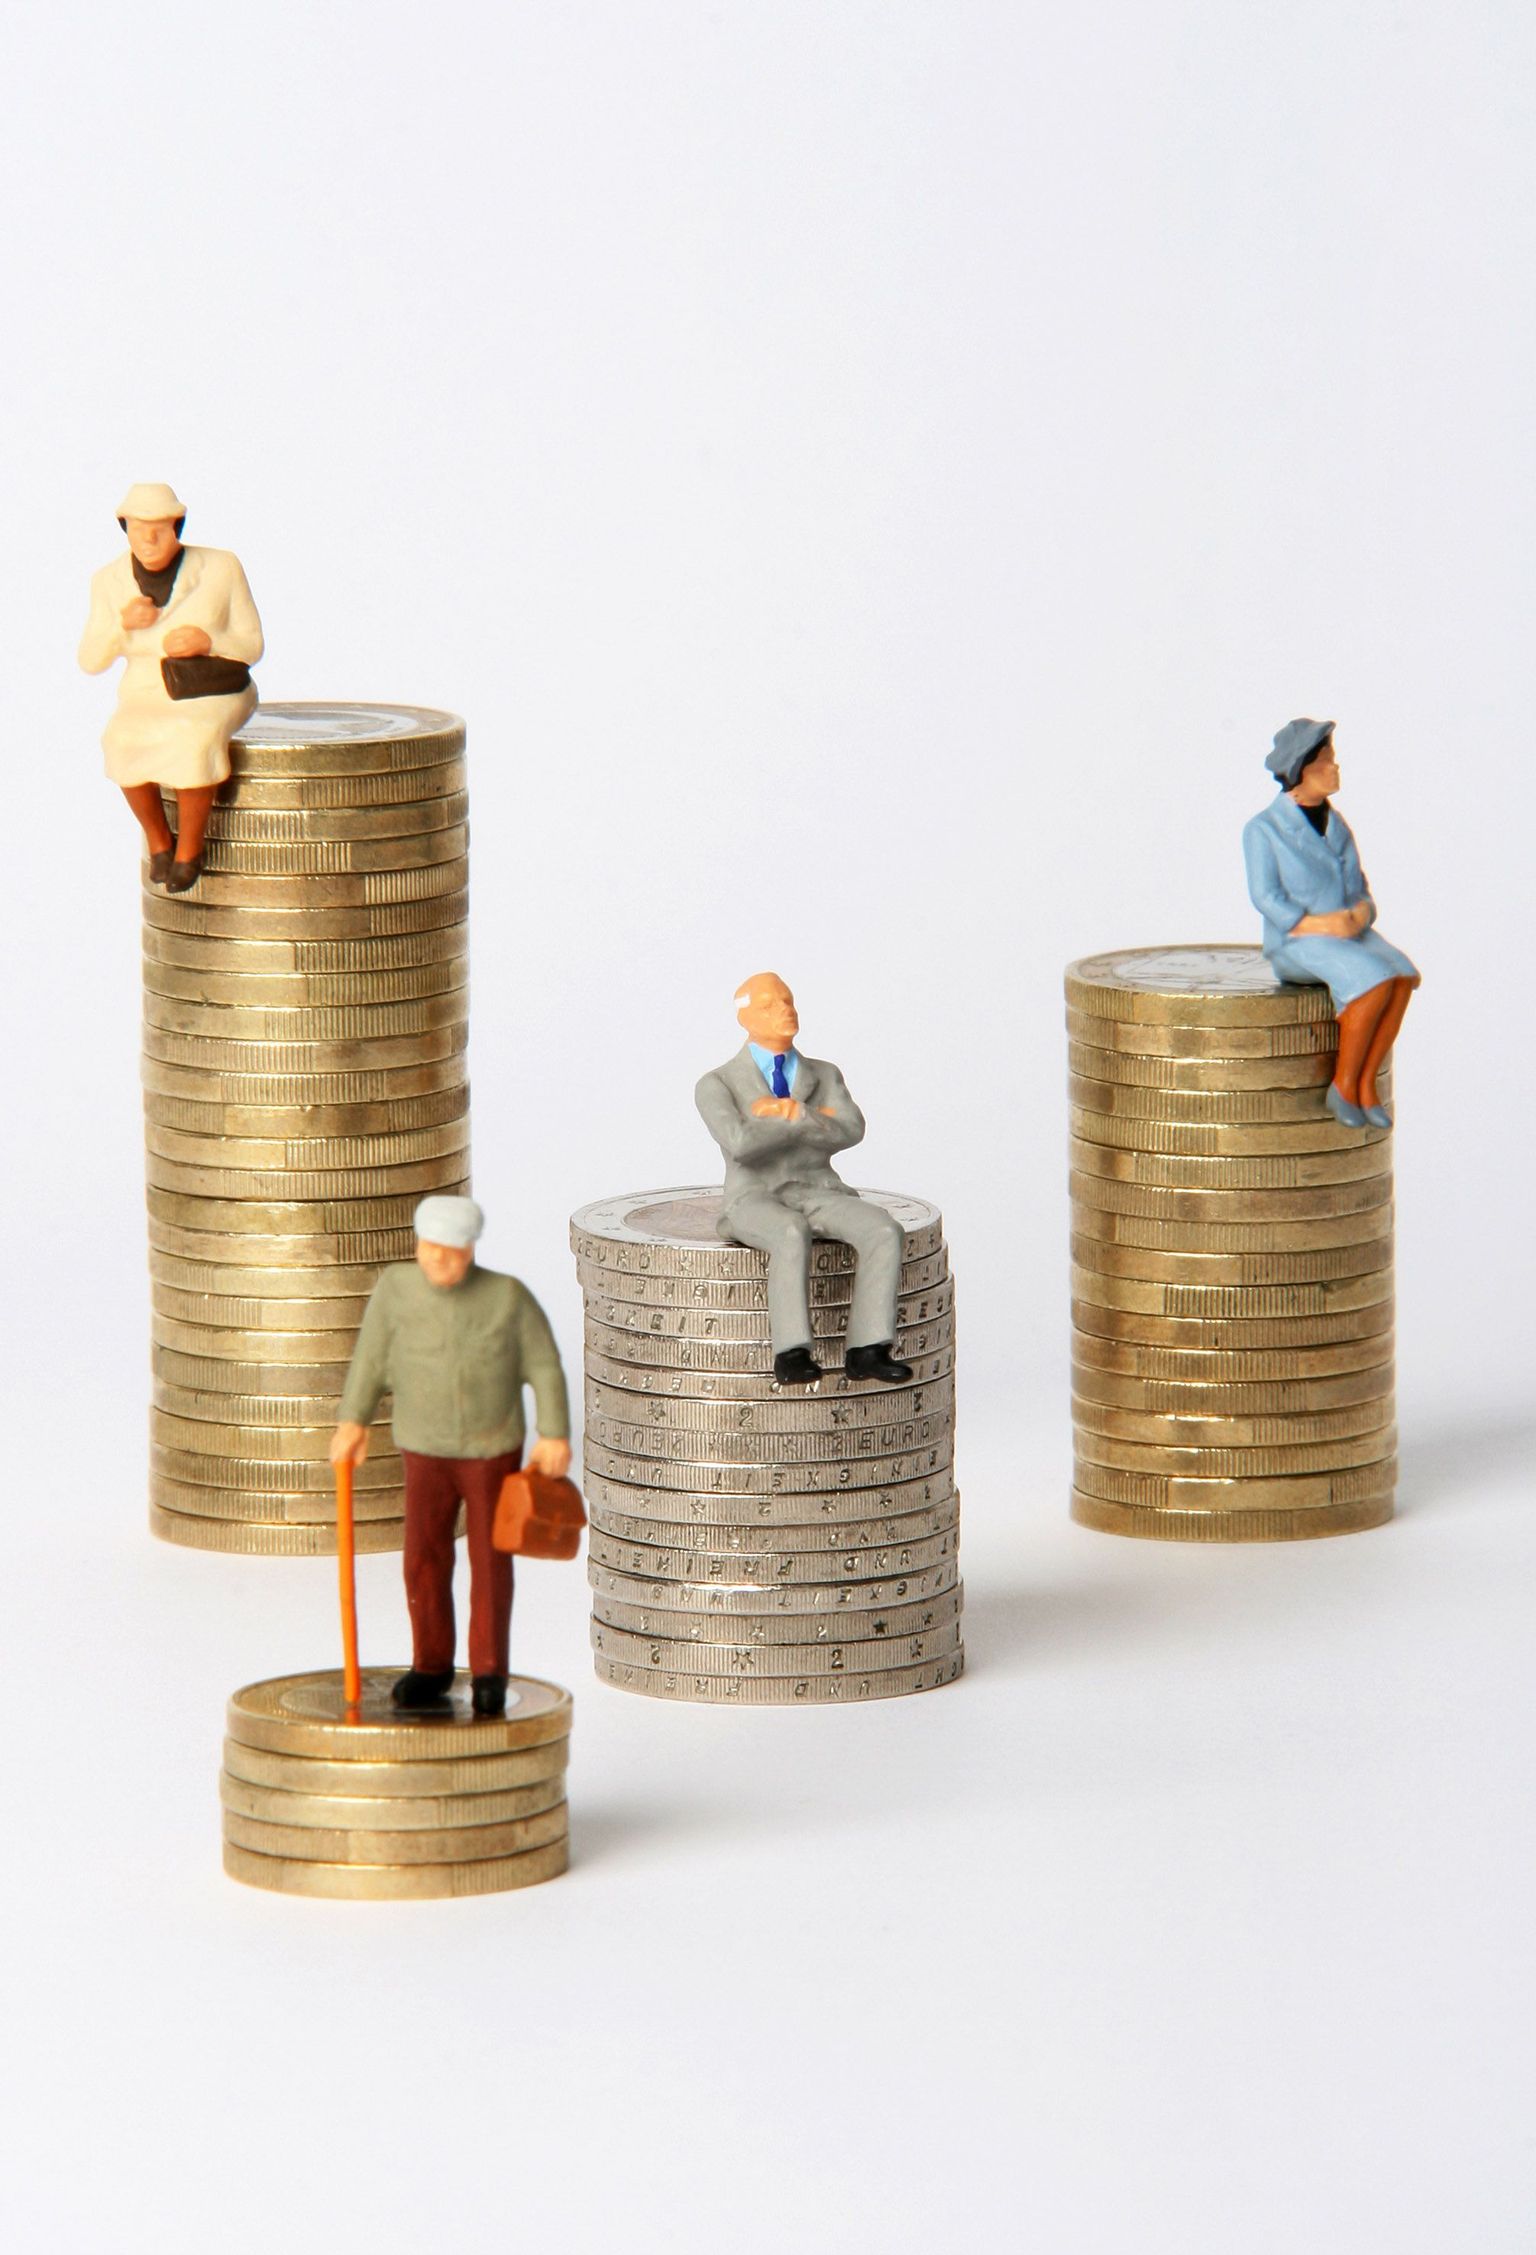 Pensionisüsteemi muudatused peavad tagama piisava sissetuleku, kuhu ei kandu üle praegune palkade suur erinevus.